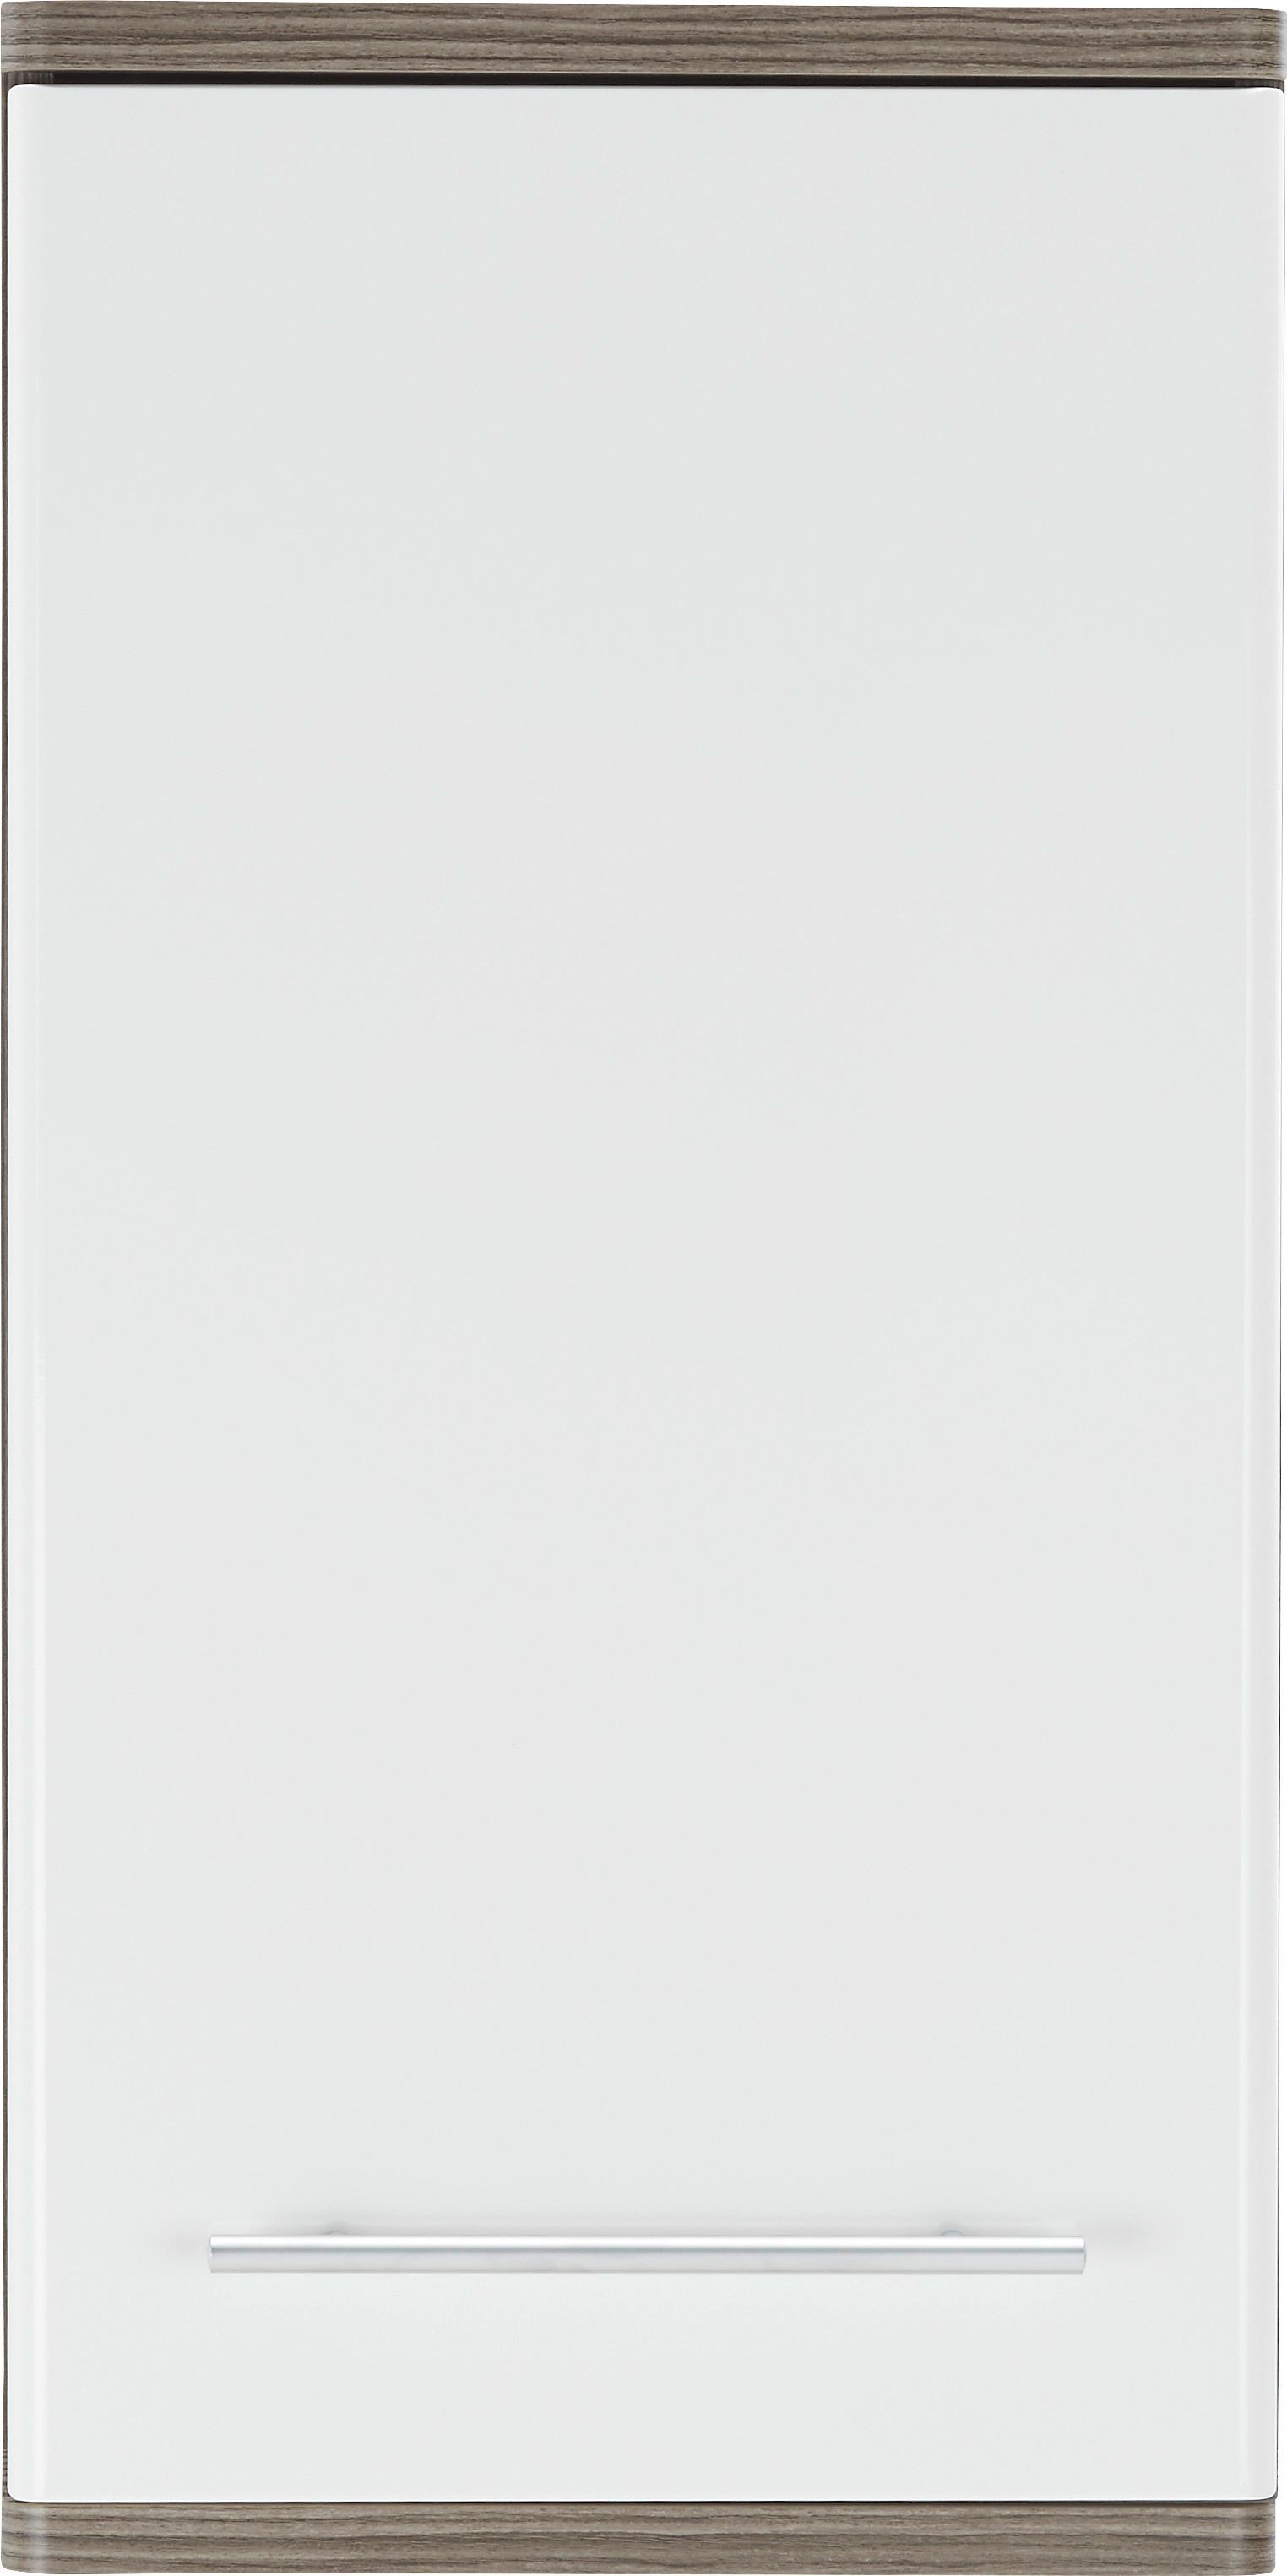 Horní Skříňka Santorin -Exklusiv- - bílá/tmavě hnědá, Konvenční, kov/kompozitní dřevo (40/78/22cm) - Modern Living